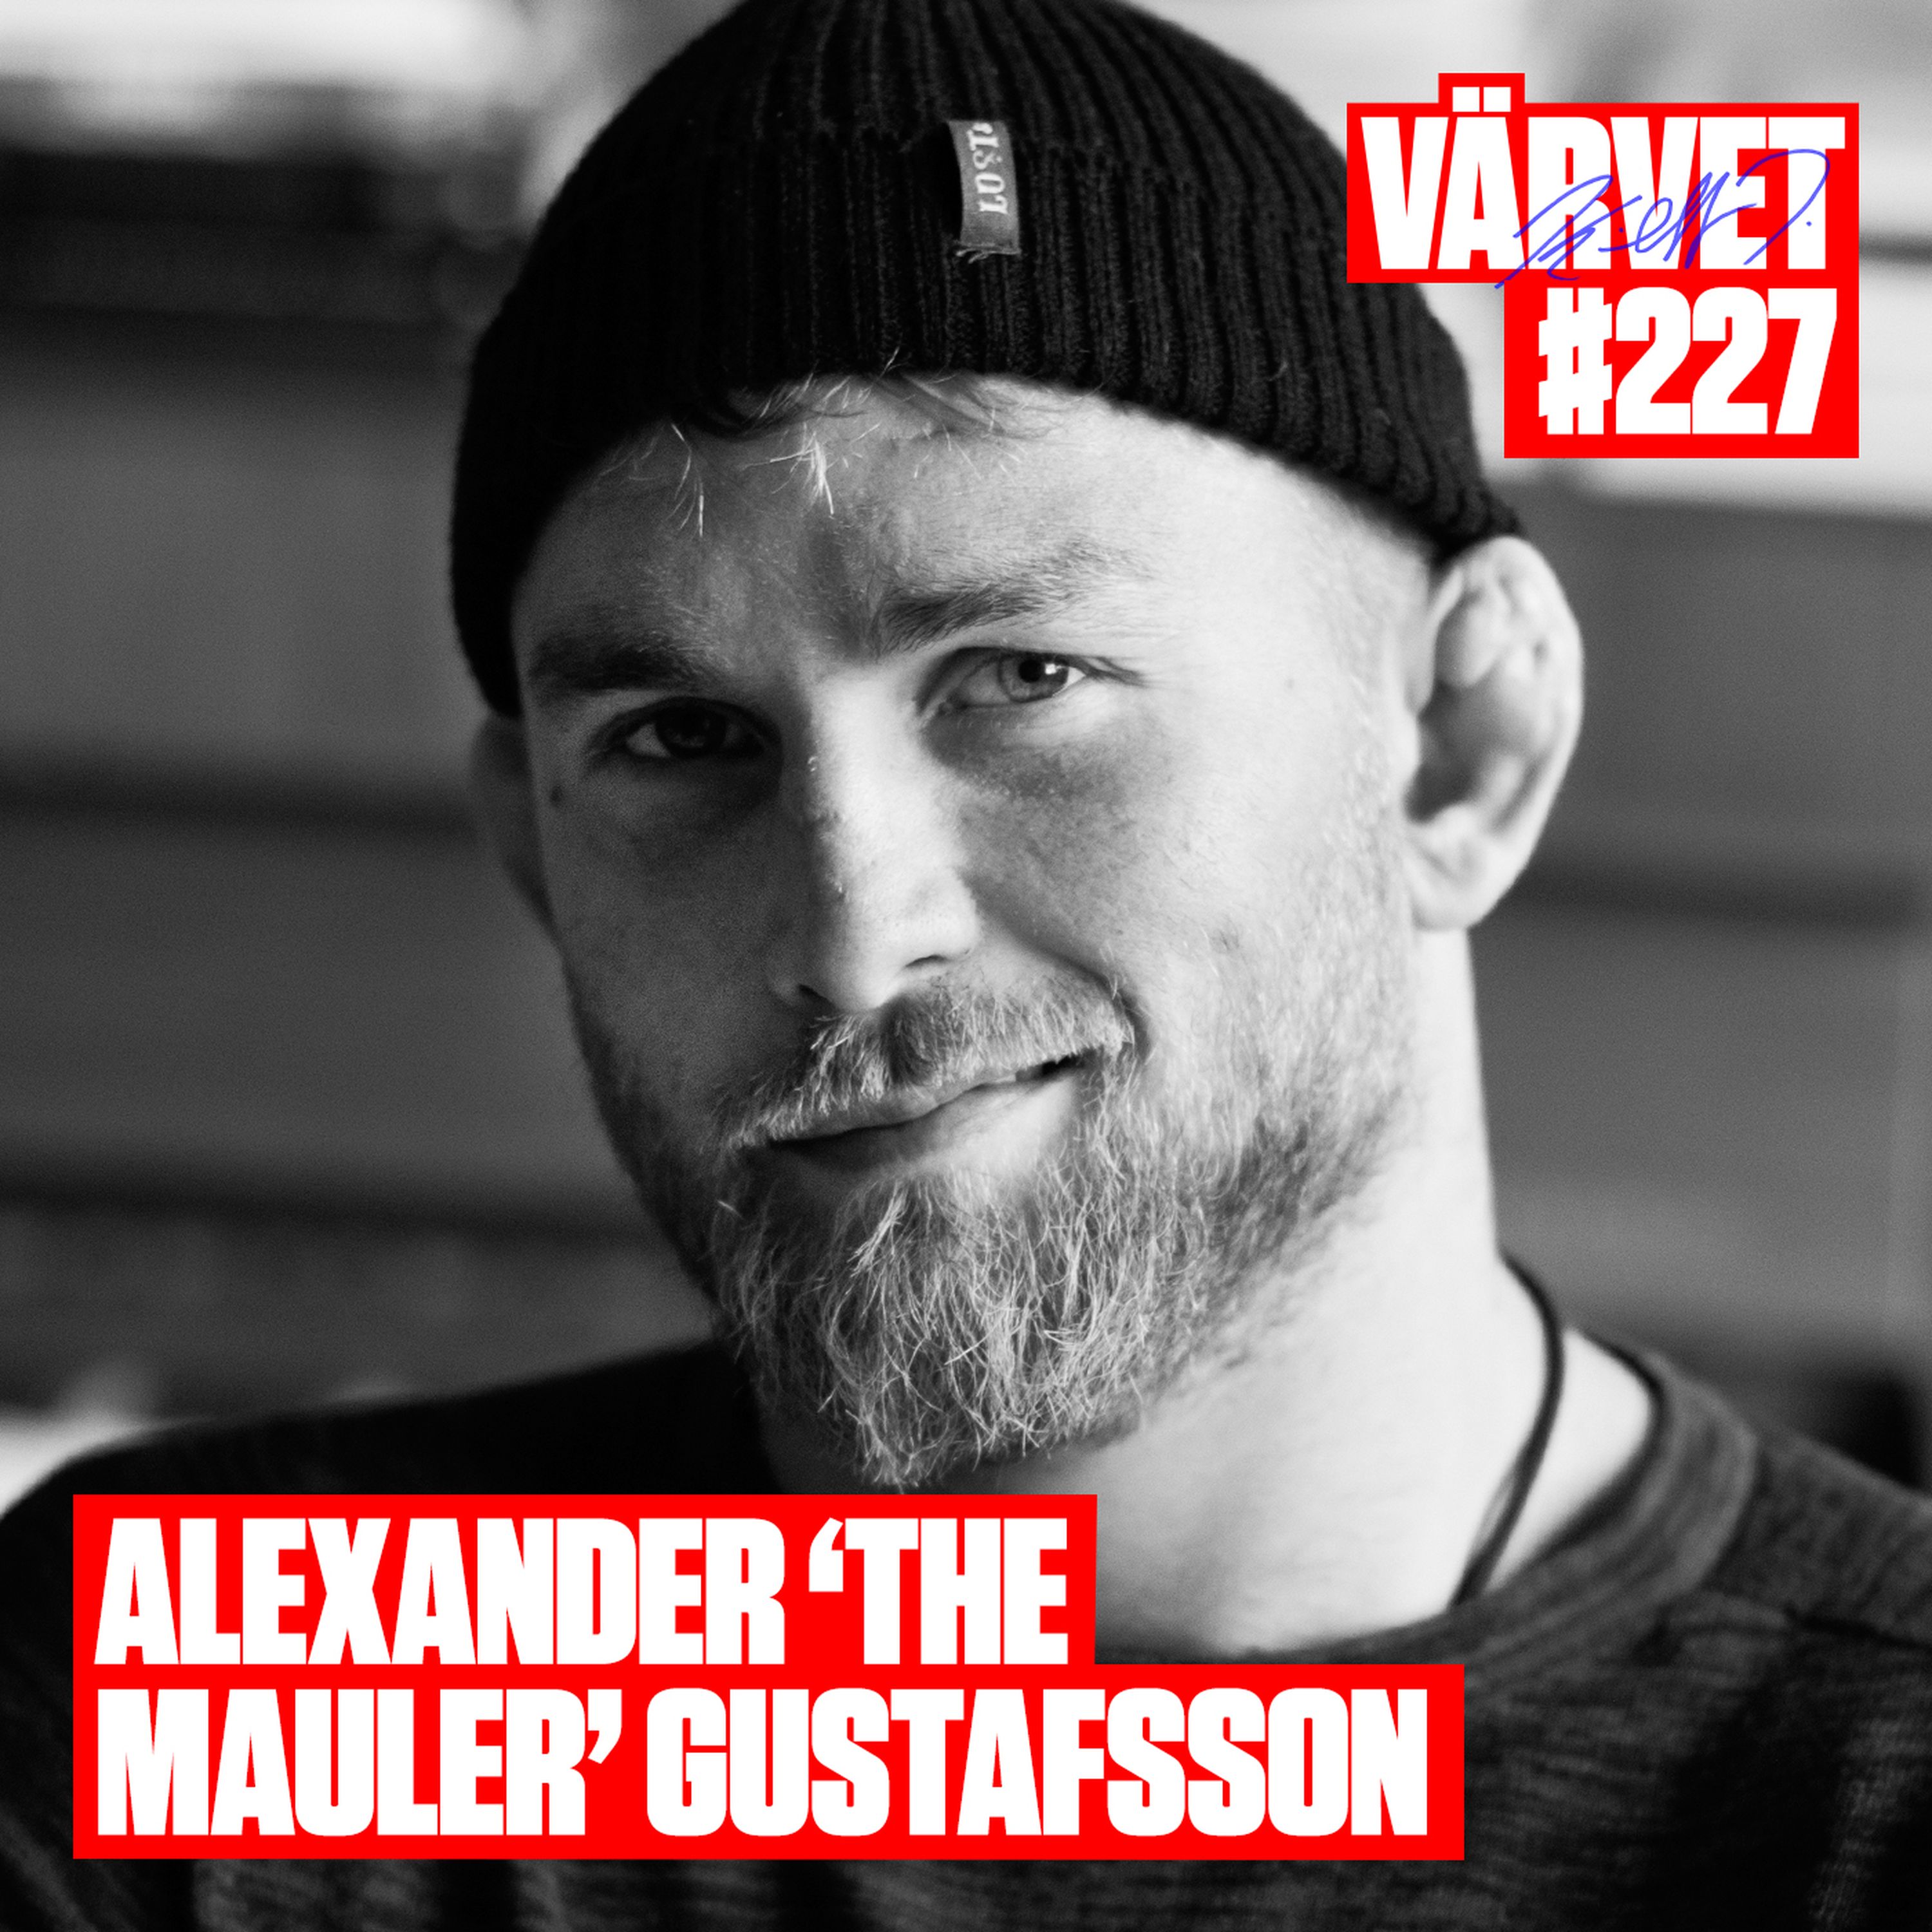 #227: Alexander "The Mauler" Gustafsson